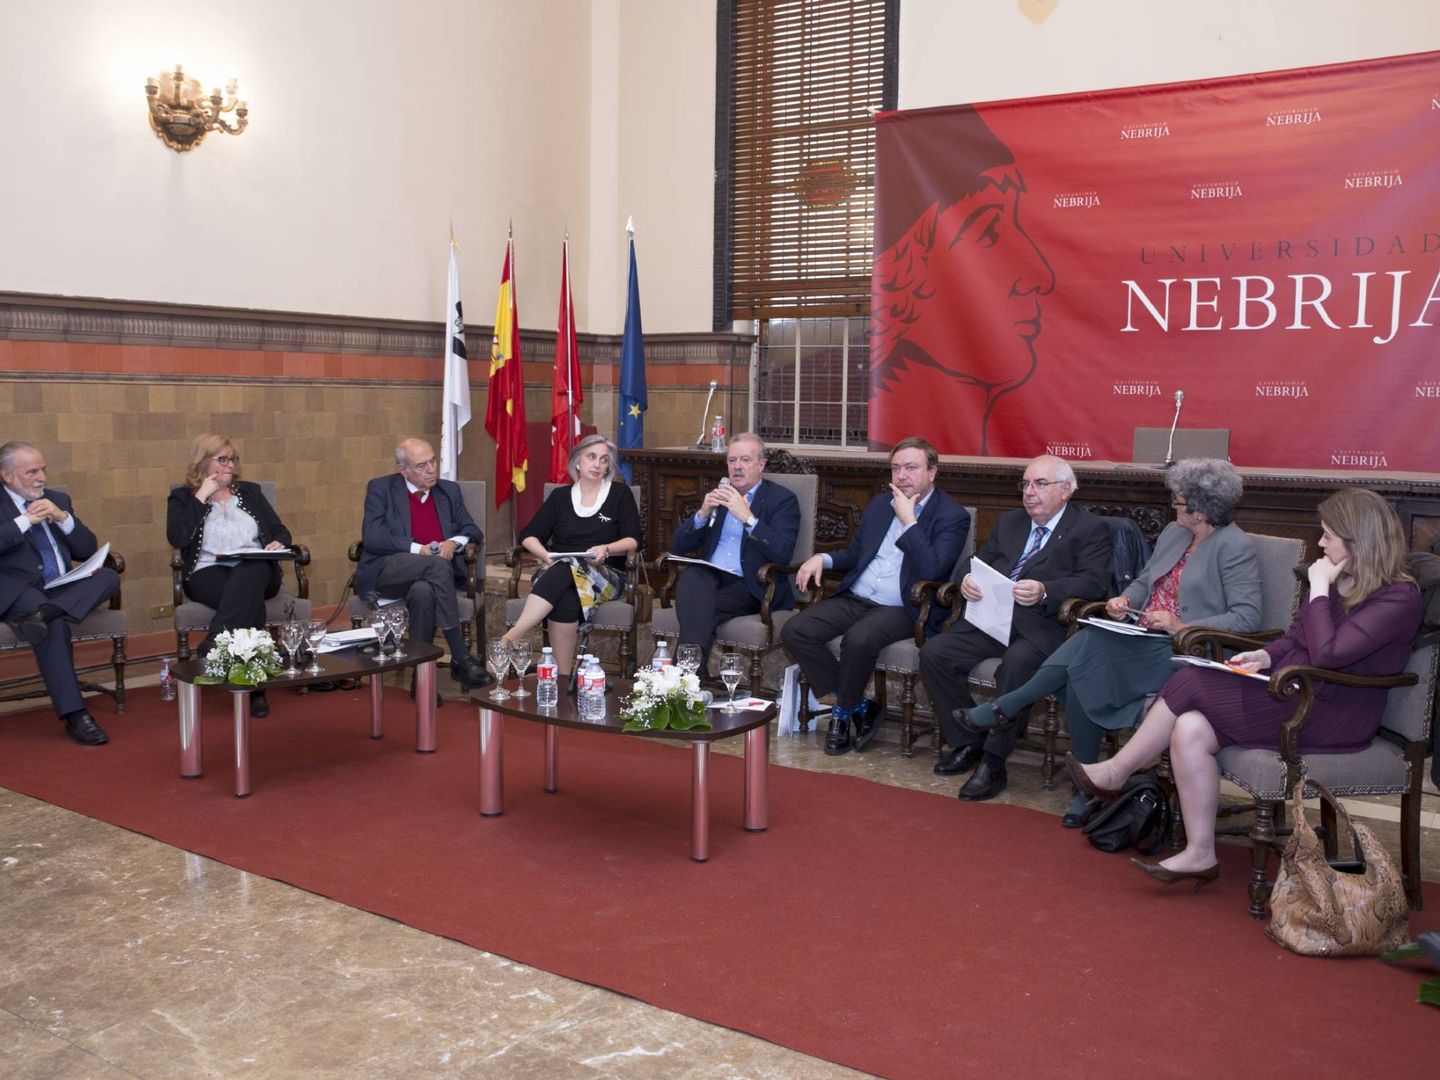 Imagen del evento celebrado en la Universidad de Nebrija. (Universidad de Nebrija)